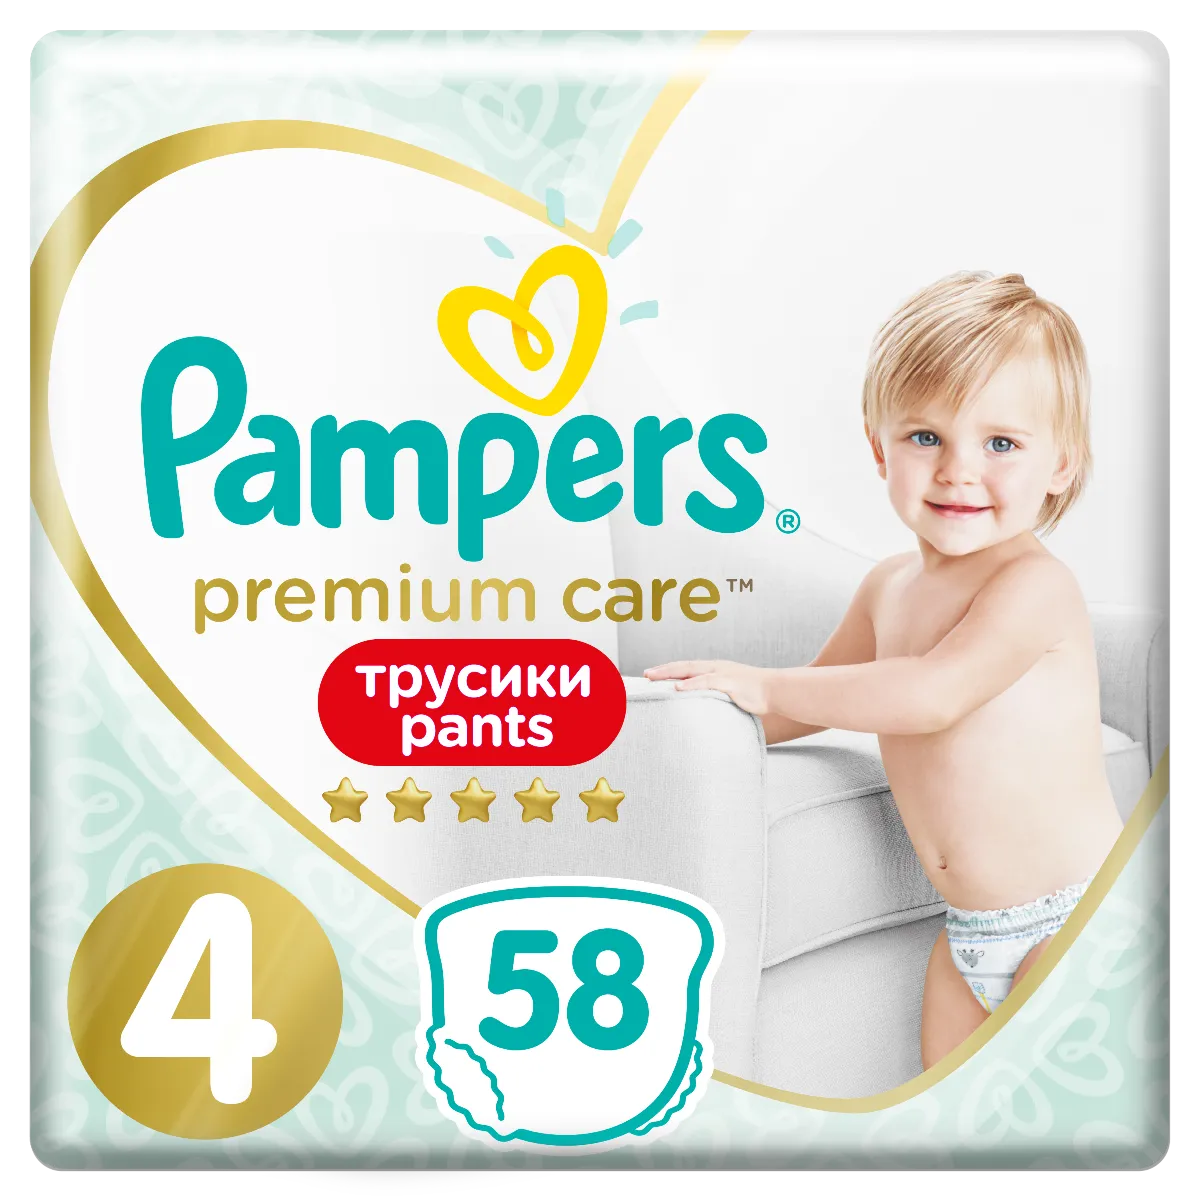 Pampers Premium Care Pants Maxi pieluszki jednorazowe, rozmiar 4, 9-15 kg, 58 szt.